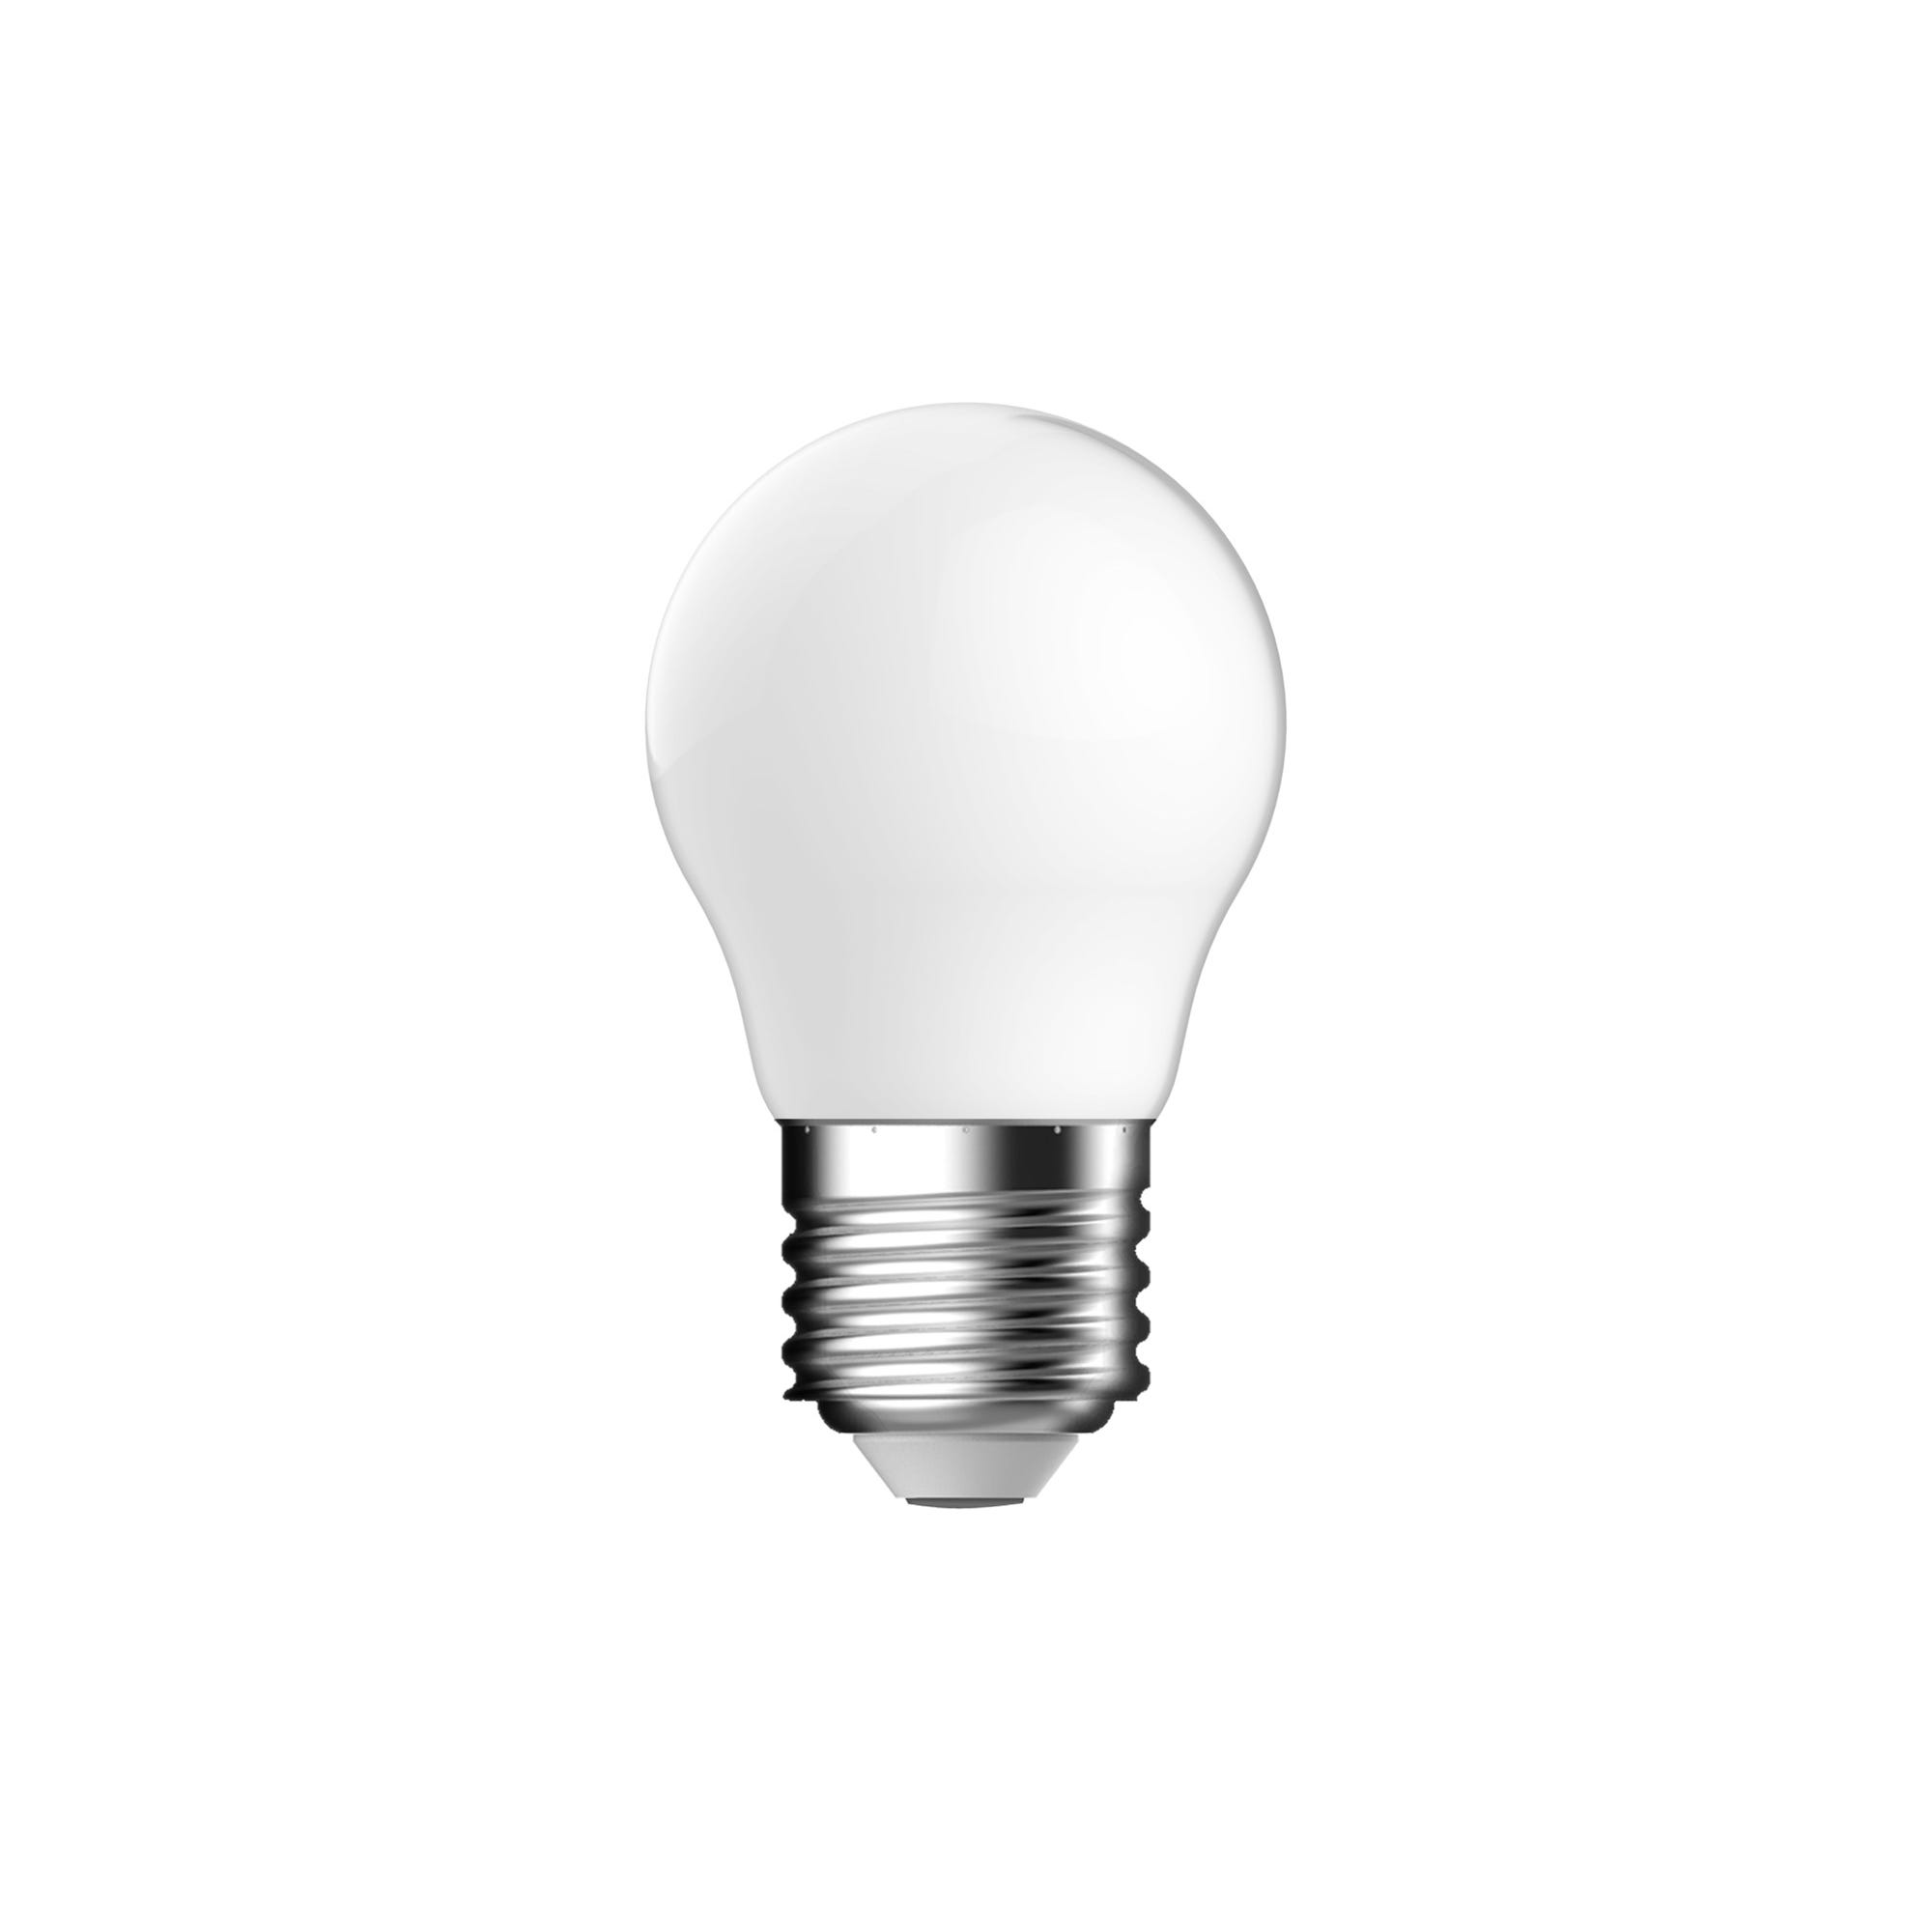 Ampoule LED E27 blanc chaud - NORDLUX 2